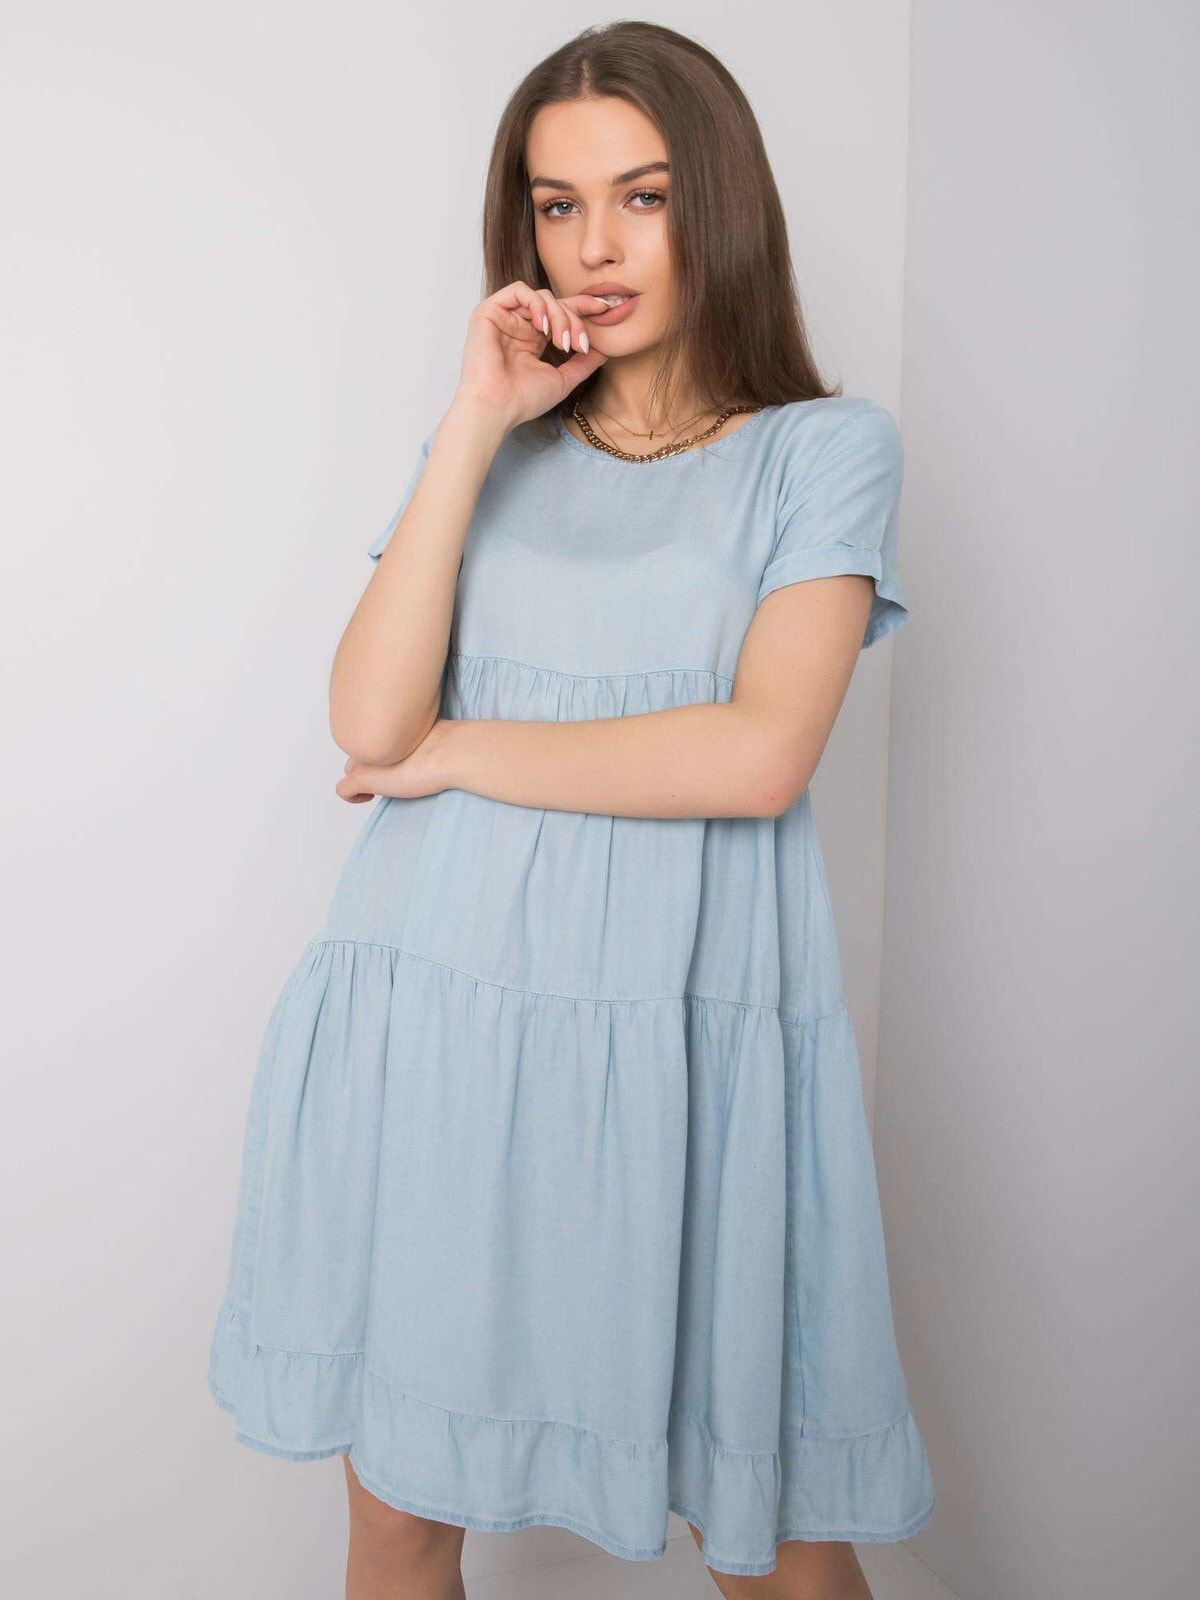 Женское летнее платье свободного кроя с коротким рукавом  Factory Price